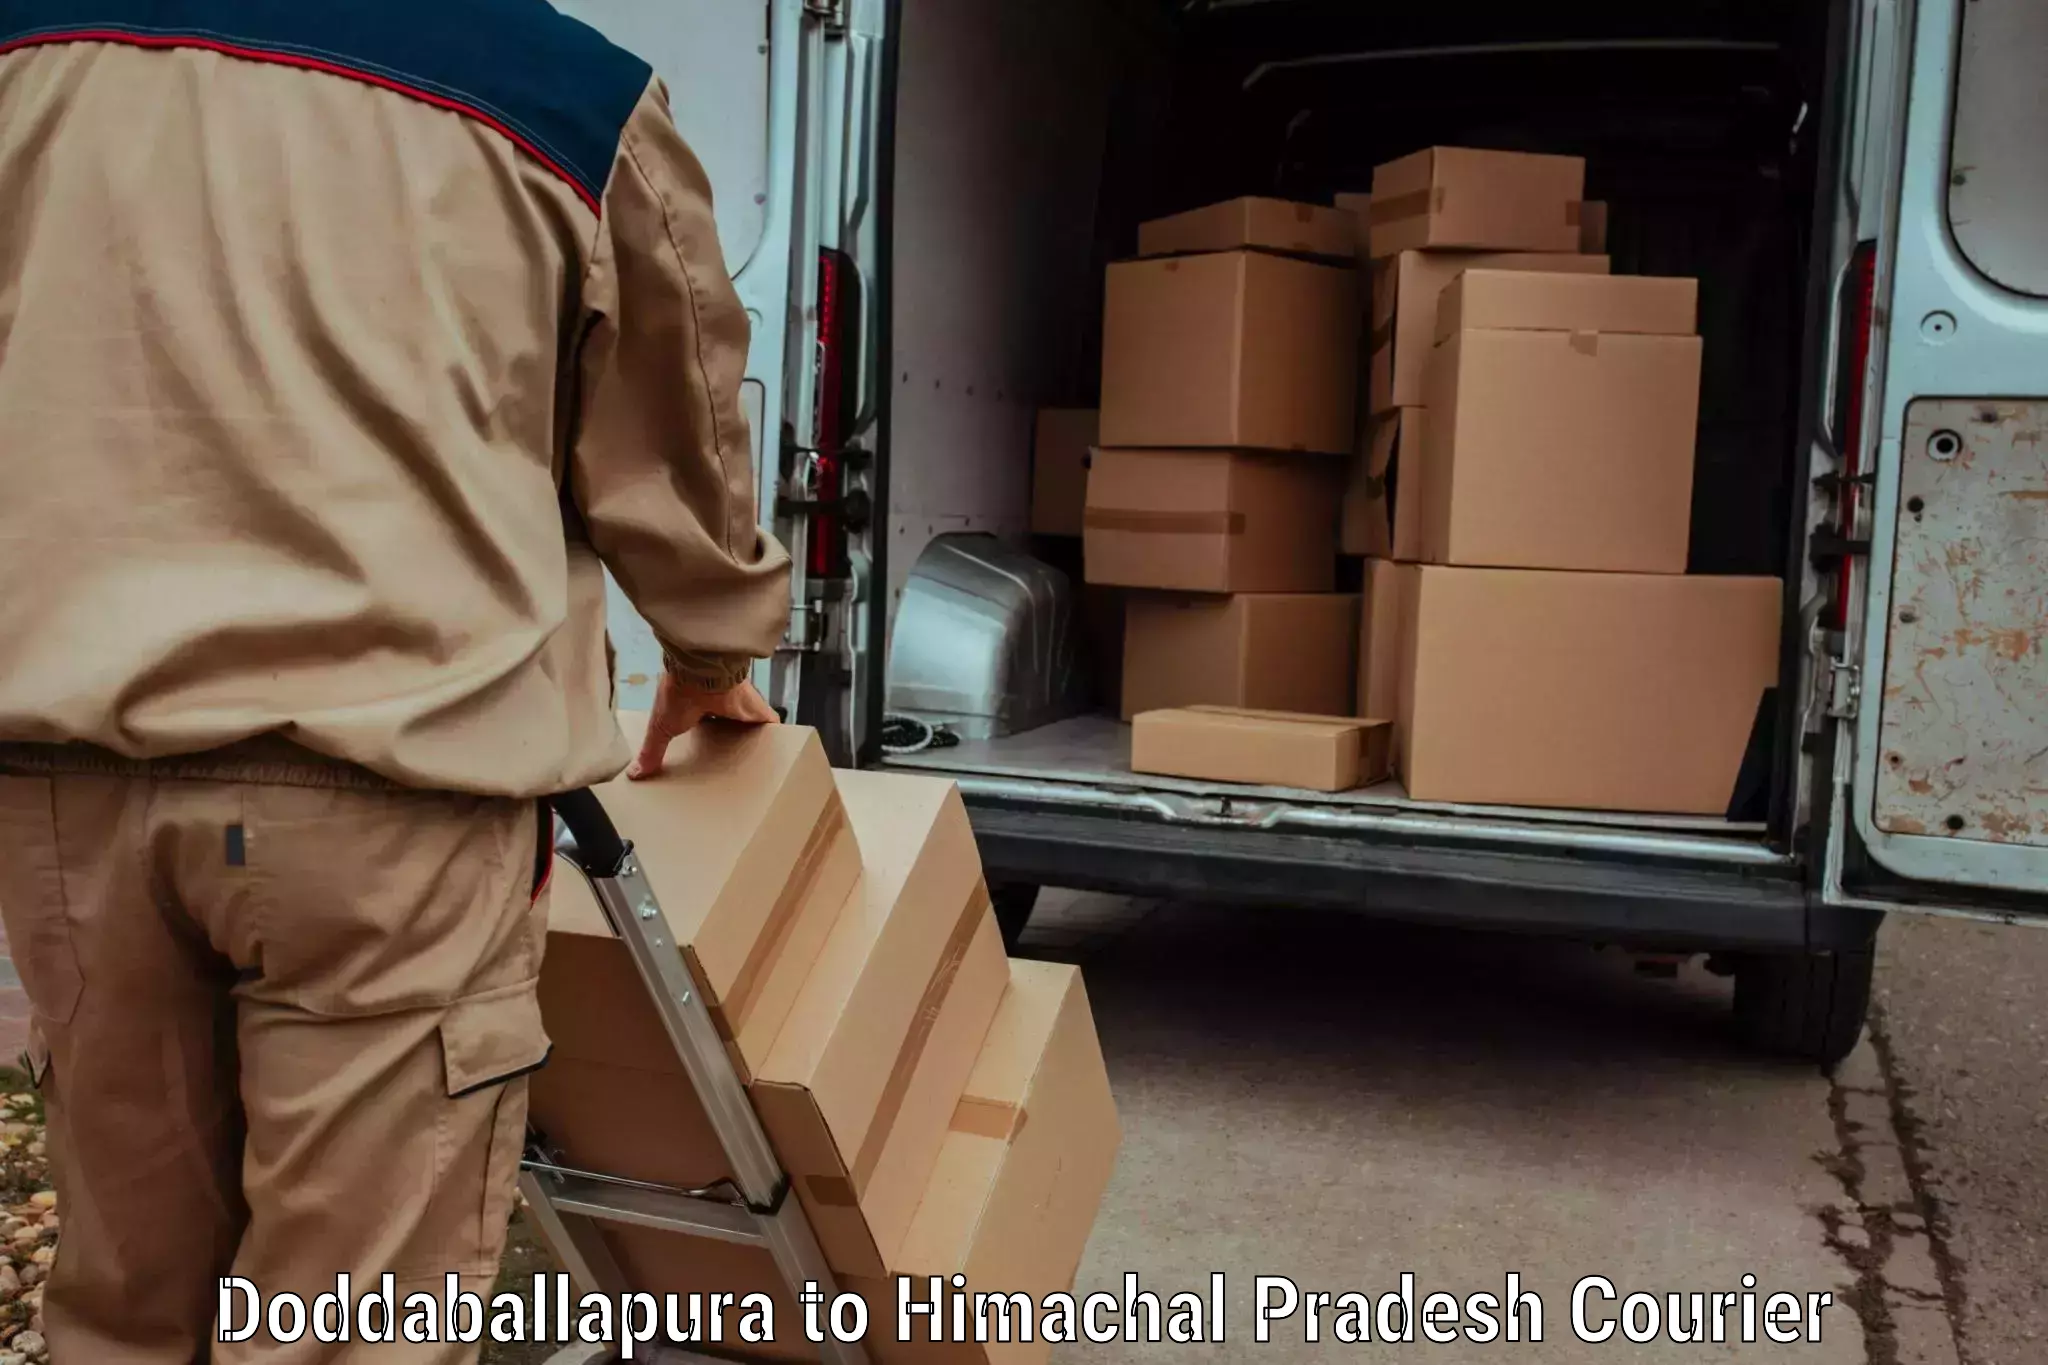 Cross-border shipping Doddaballapura to Dheera